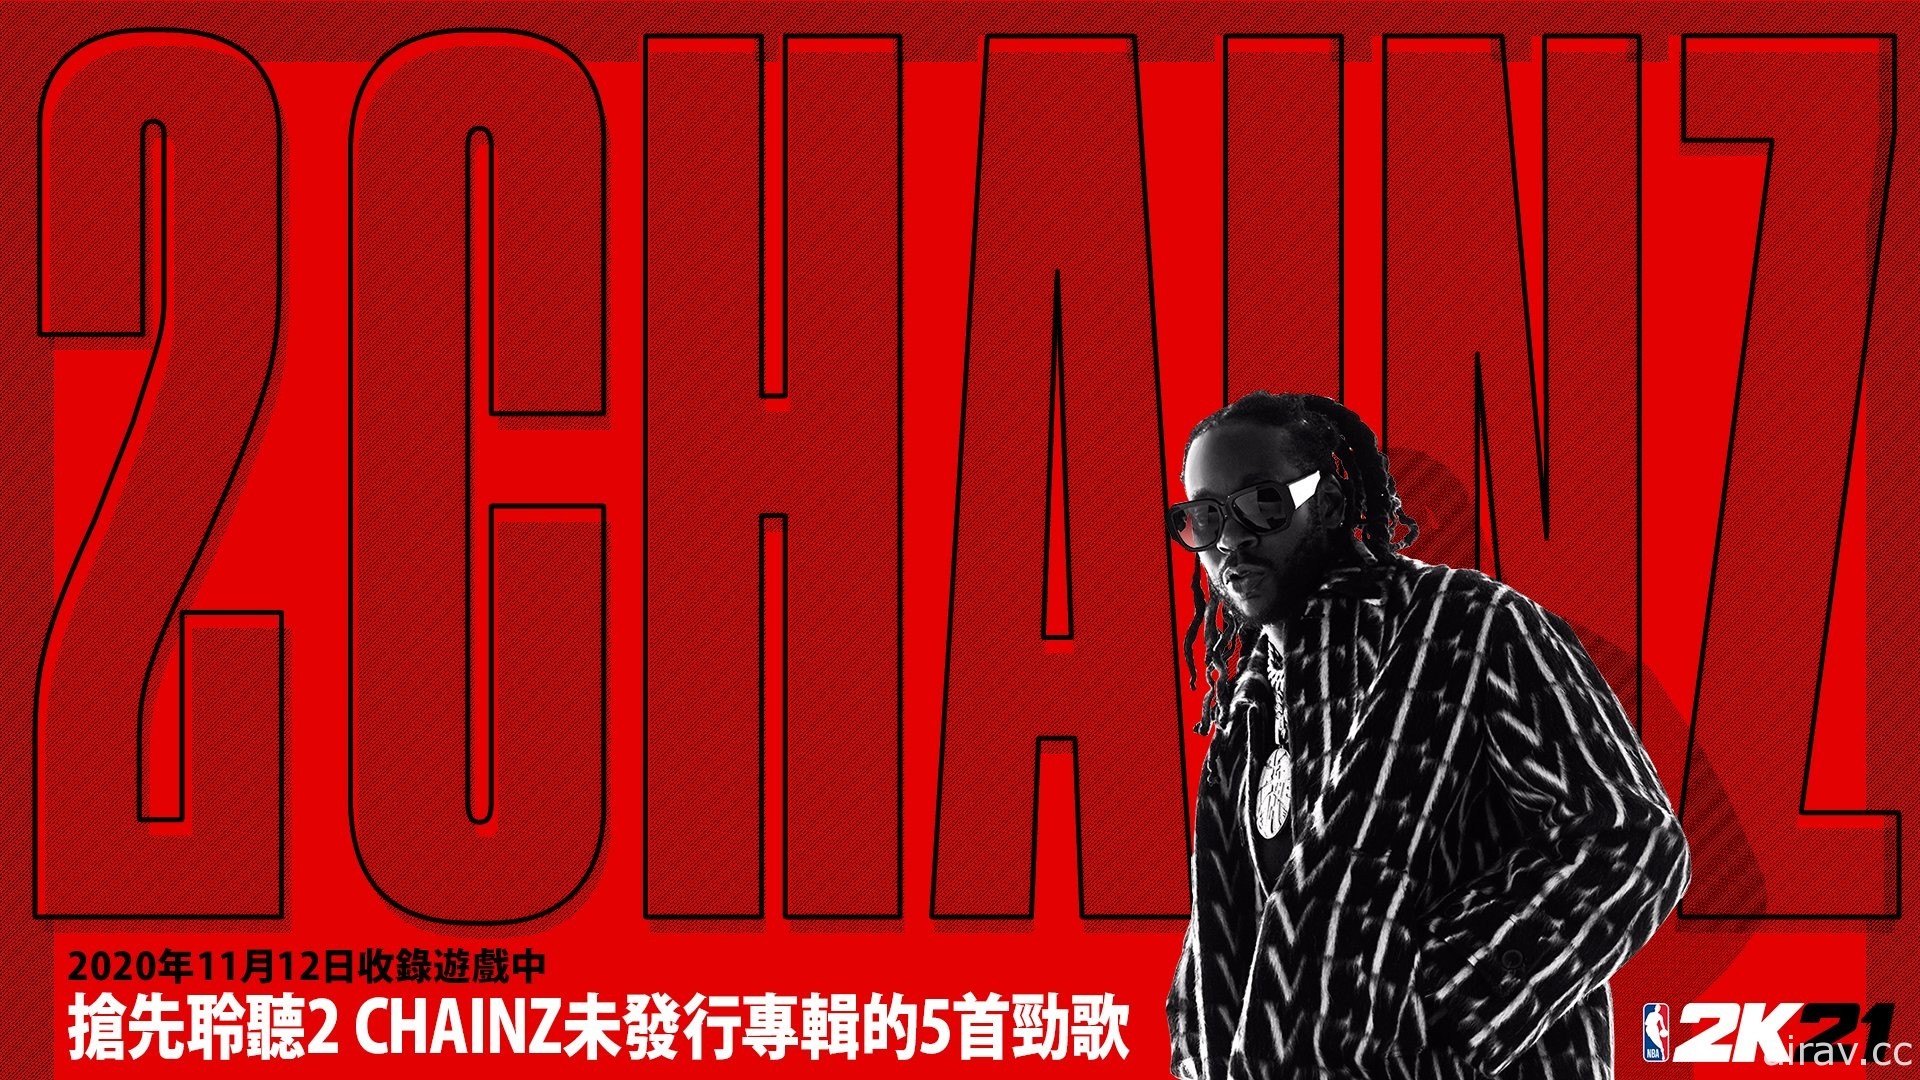 《NBA 2K21》遊戲中將搶先首播 2 Chainz 即將發行新專輯的新歌